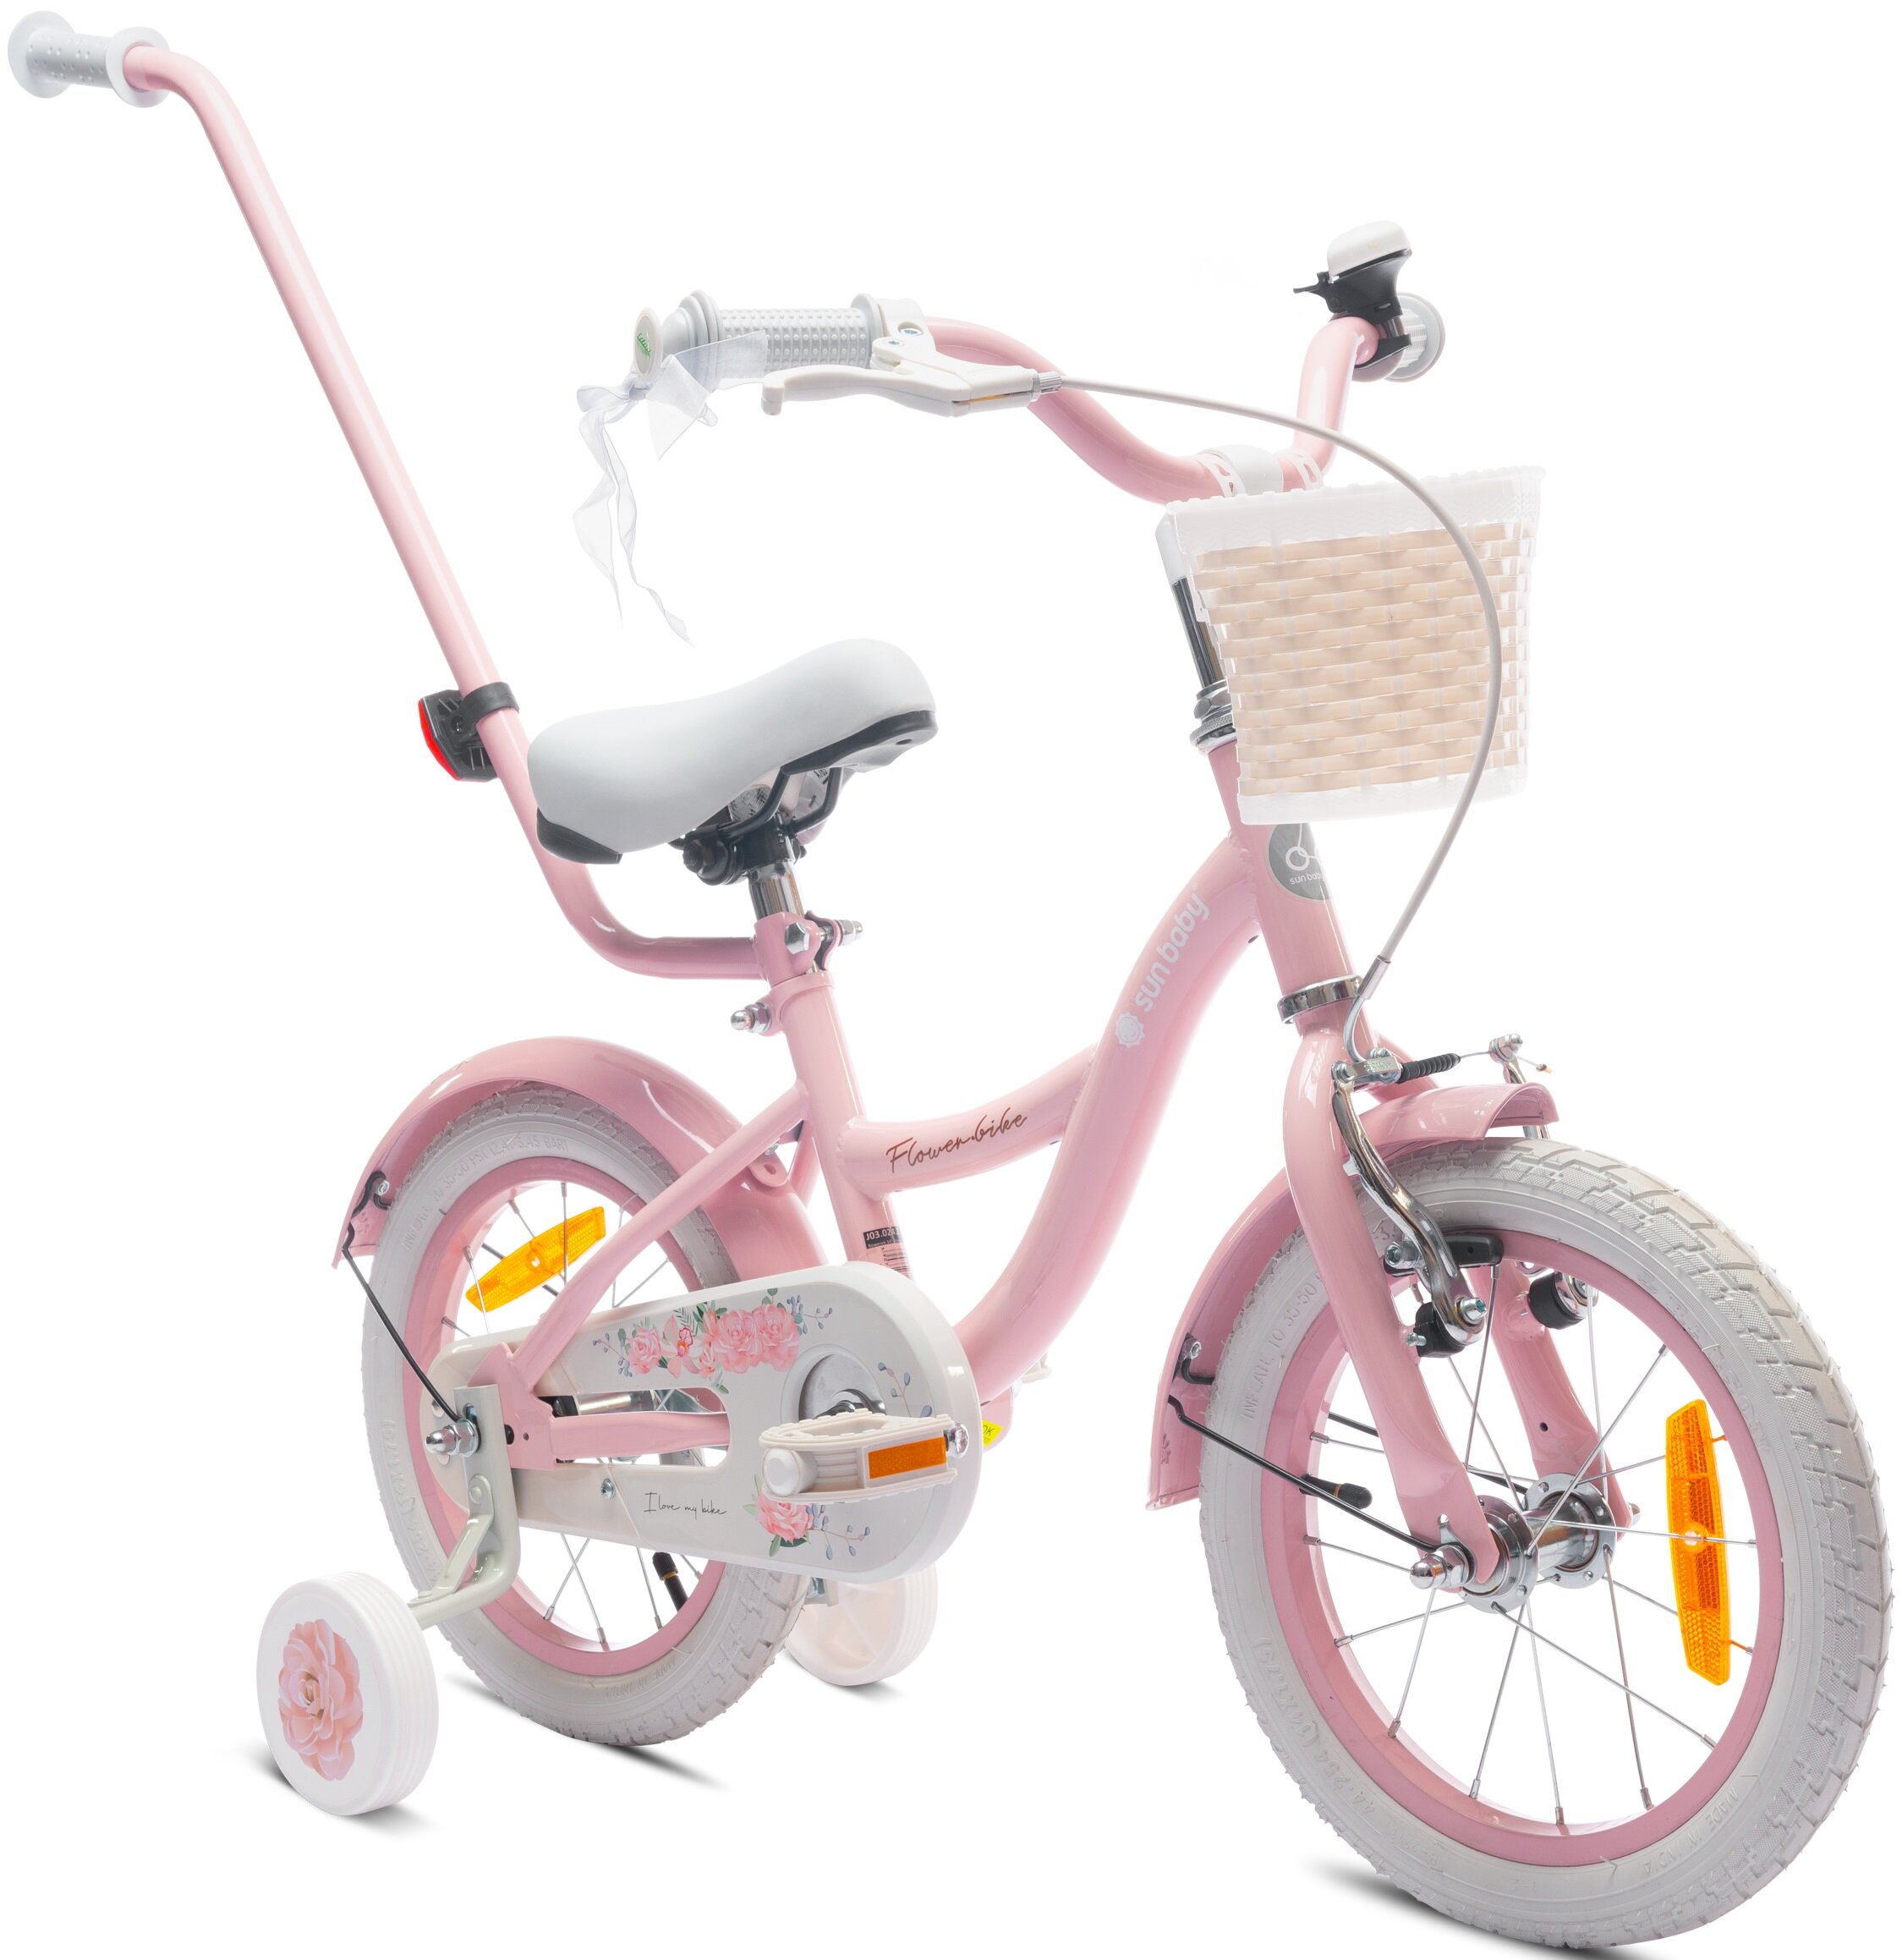 Rower dziecięcy SUN BABY Flower 14 cali dla dziewczynki Różowy różowy lakier solidna konstrukcja nowoczesne wzornictwo dla dziewczynek w wieku od 3 do 5 lat efektywna nauka jazdy szlifowanie umiejętności jazdy na rowerze